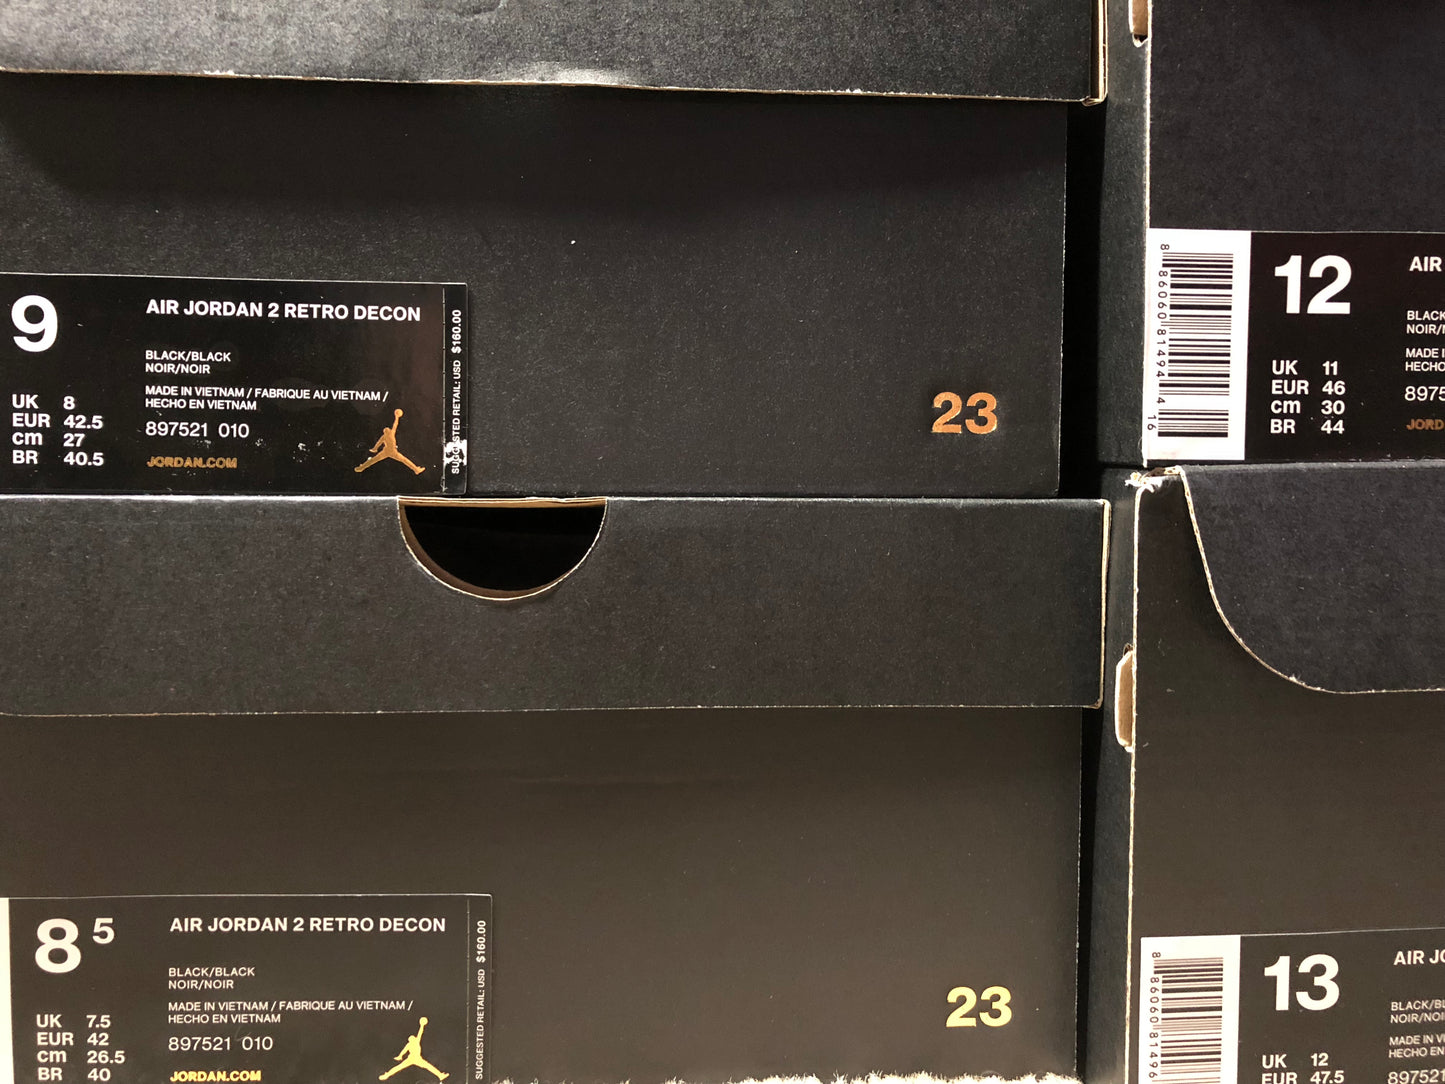 Air Jordan 2 Decon Black Suede - 897521 010 - Size 8/Size 8.5/Size 10.5